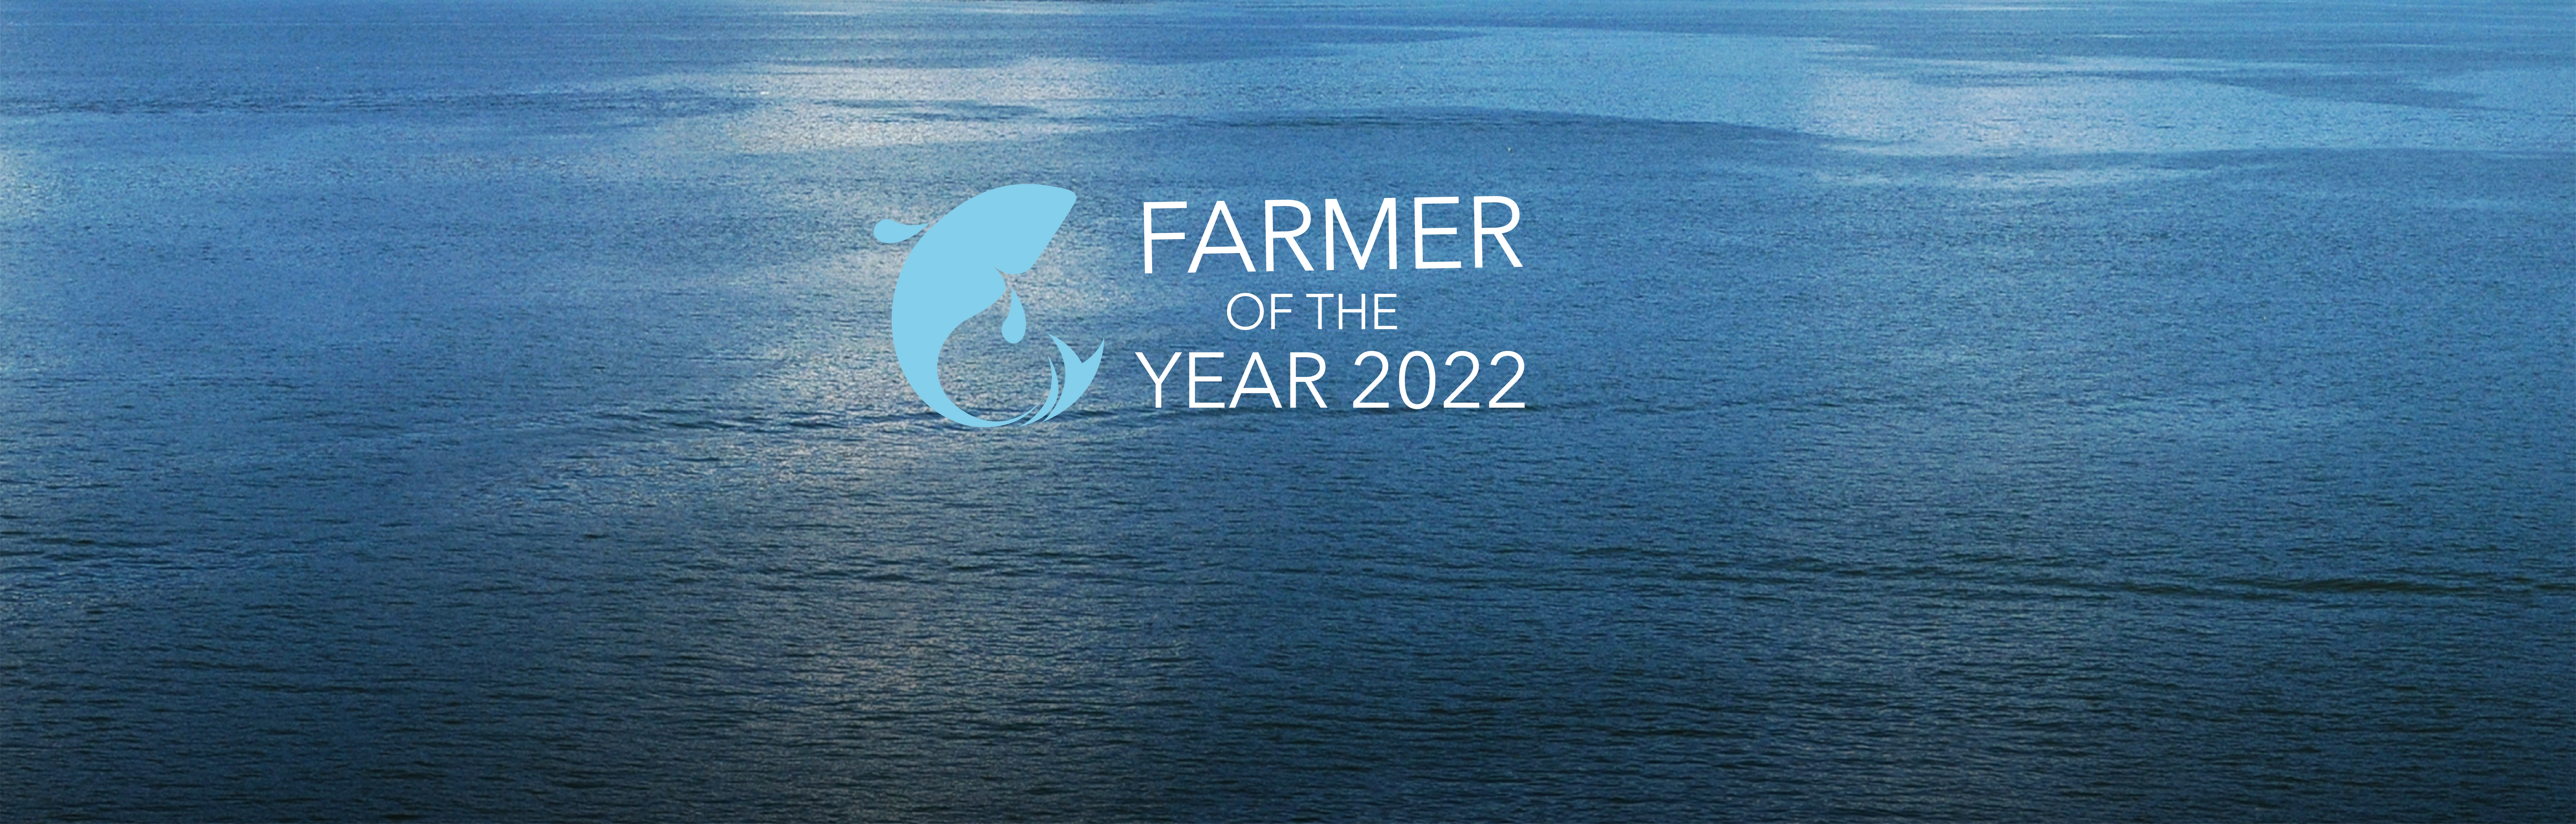 Cinco productoras de salmón del atlántico lideran el Farmer of the Year BioMar 2022